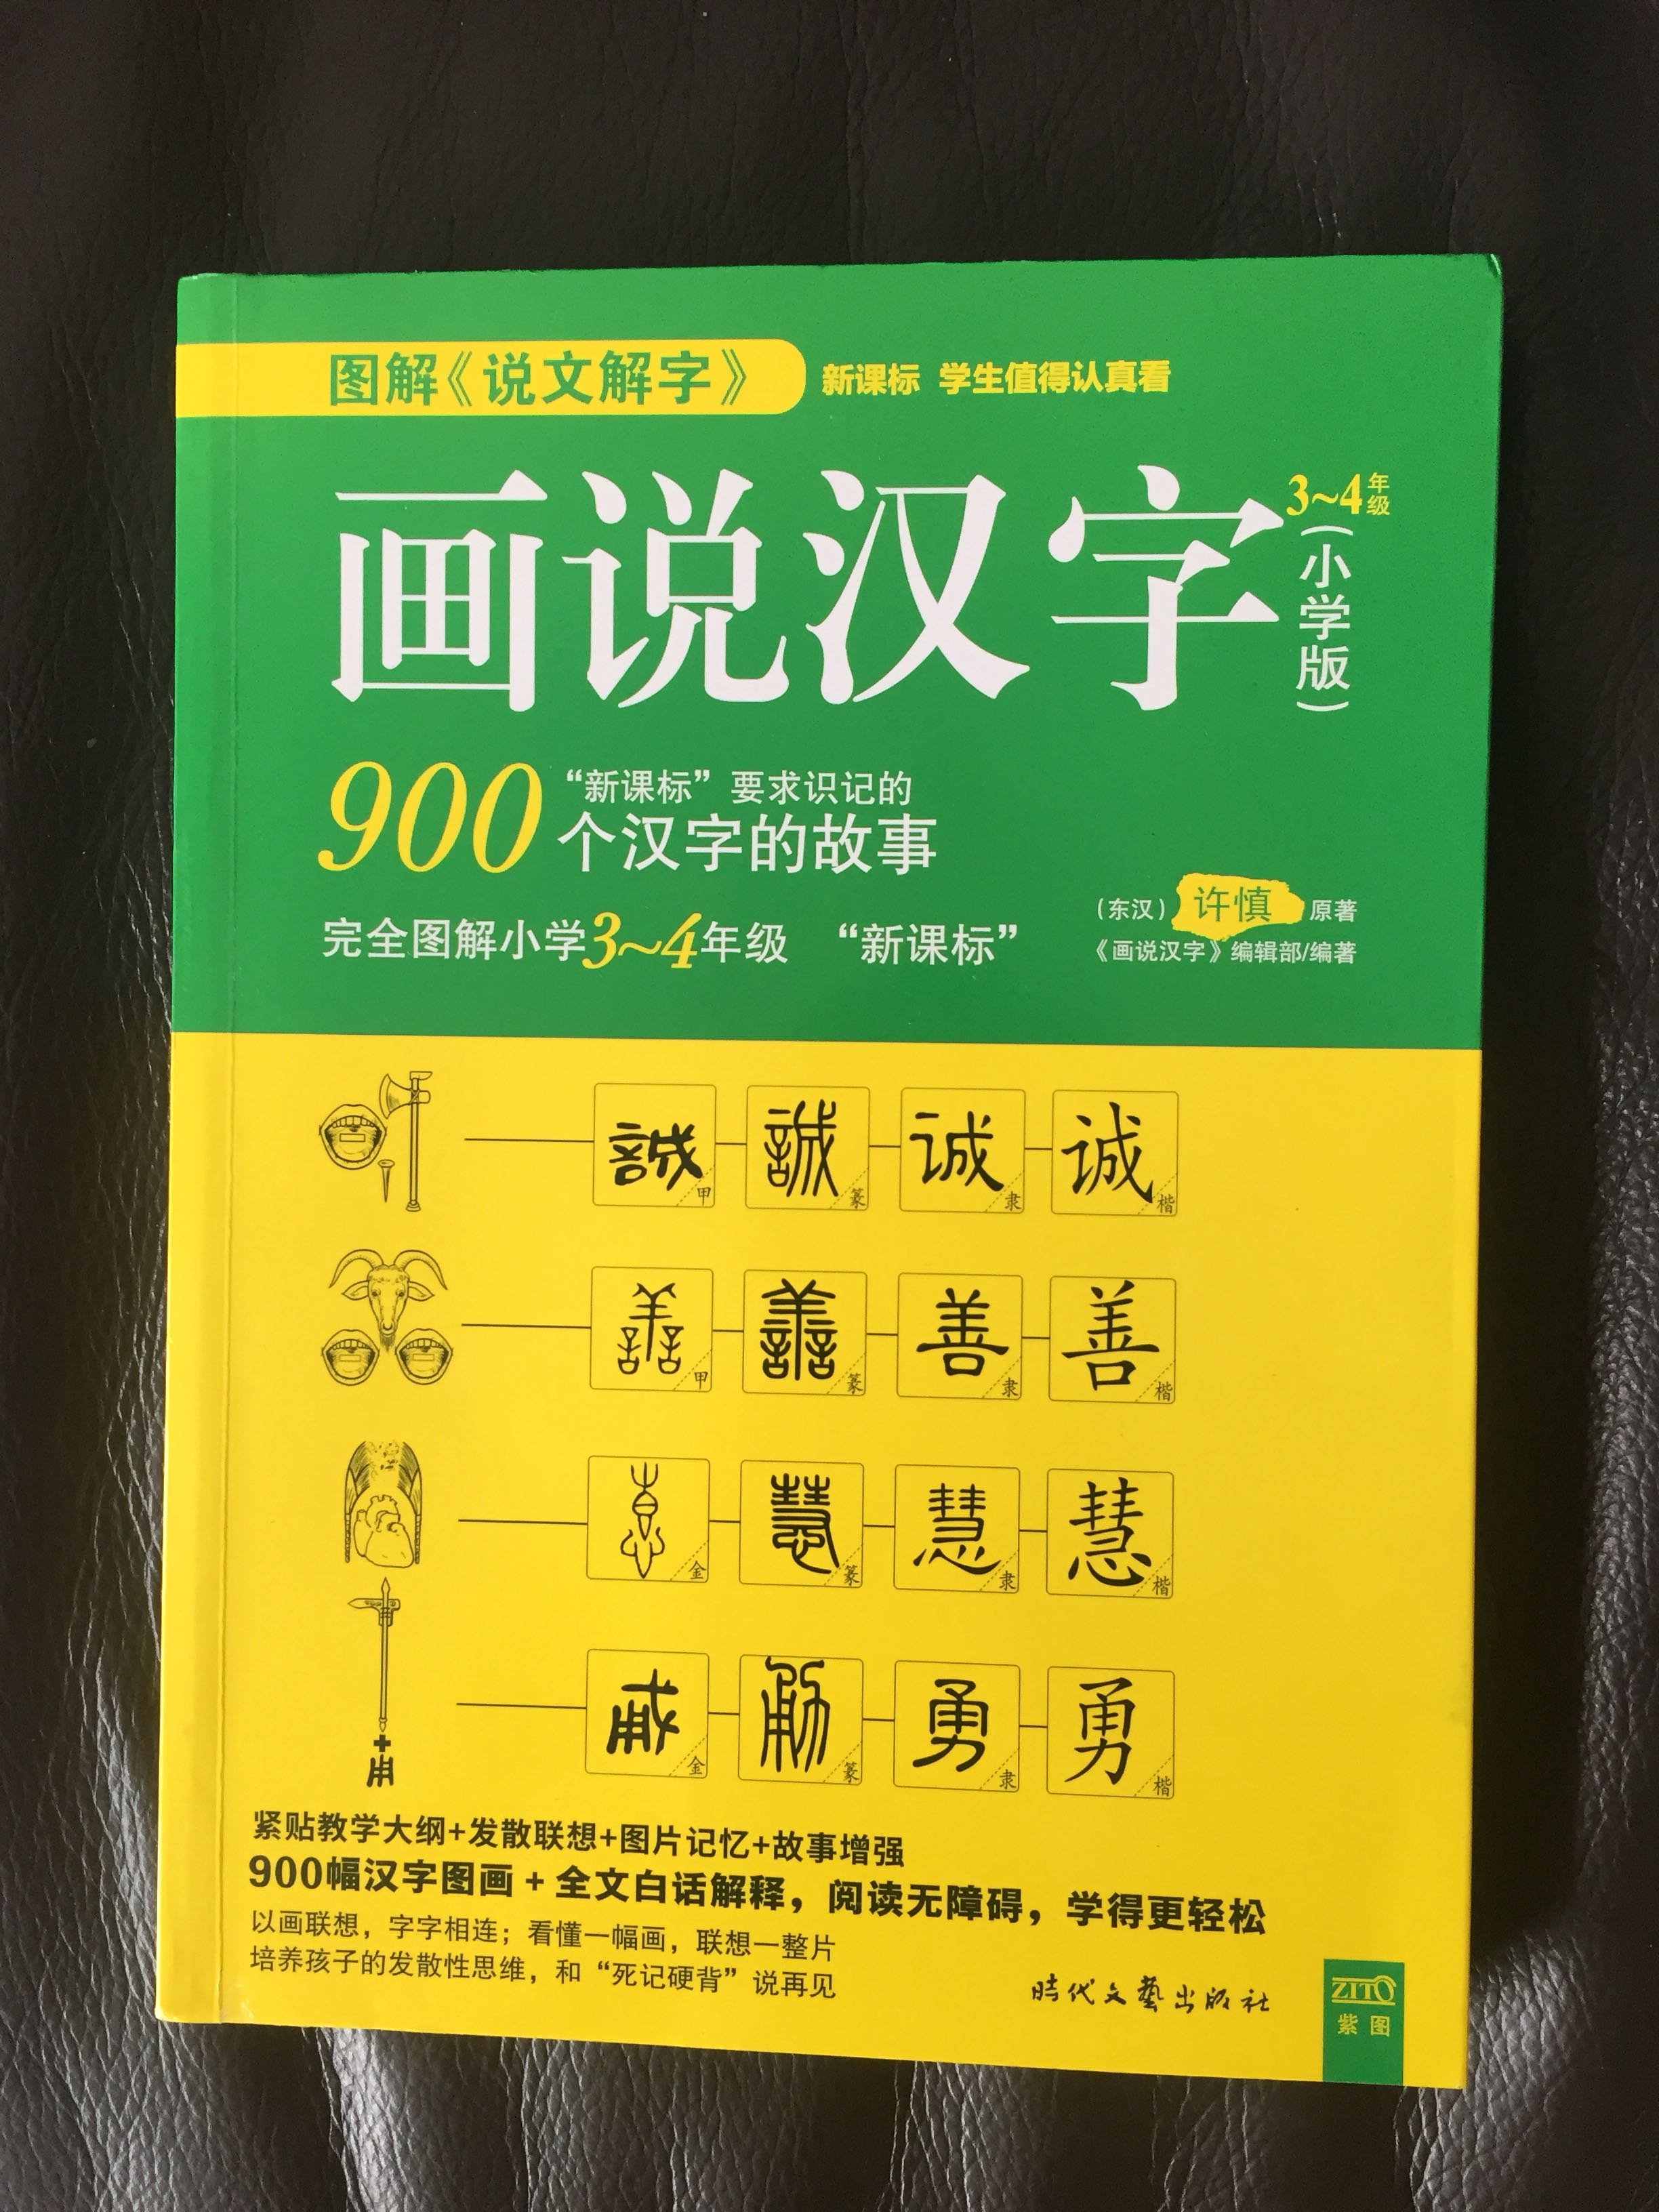 用简单易懂的方式解读汉字，方便小学生自己阅读，促进趣味学习。